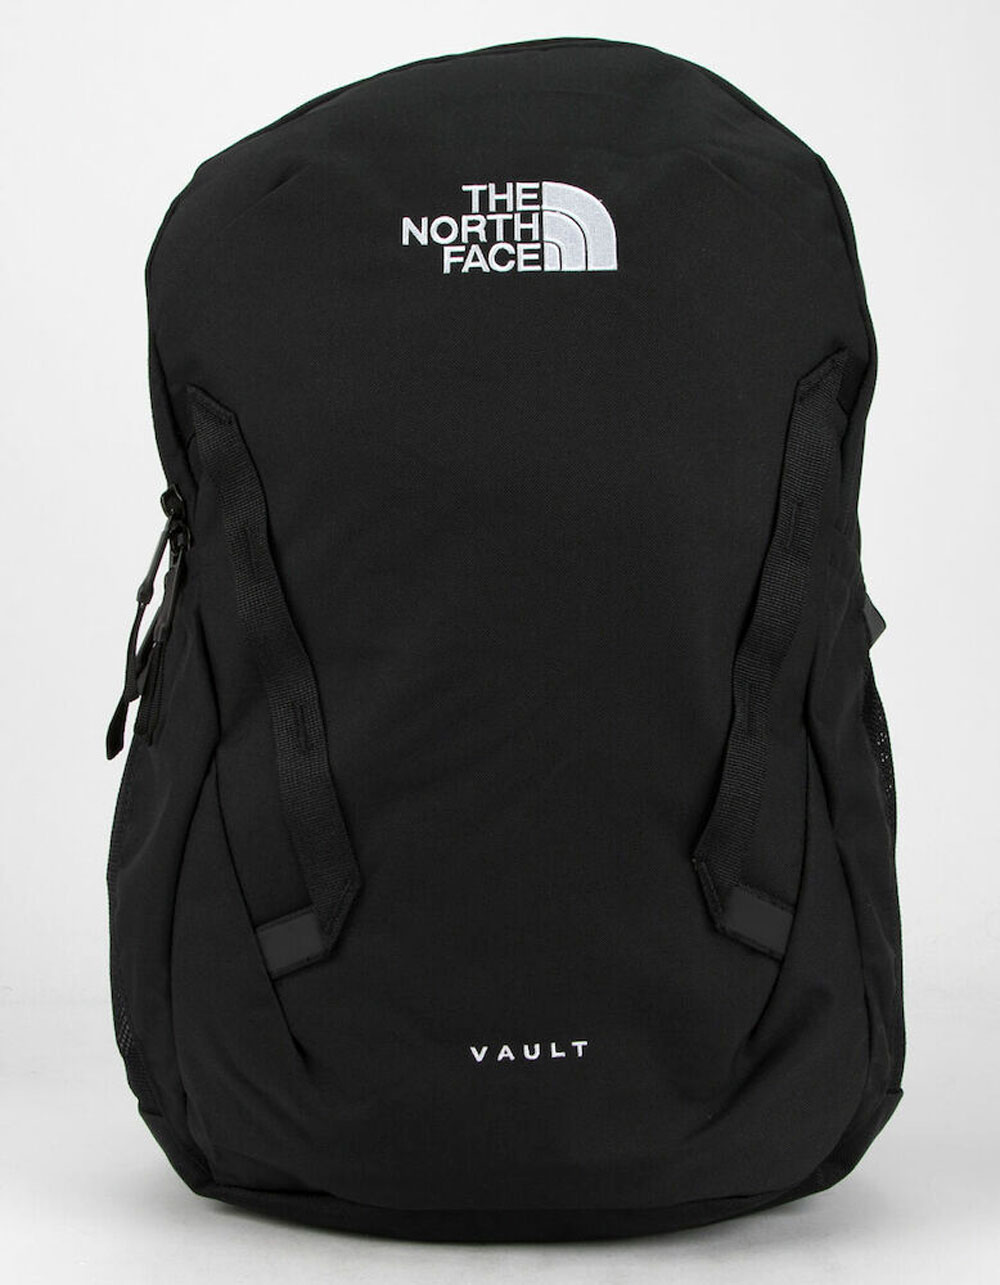 THE NORTH FACE Vault Backpack - BLACK | Tillys